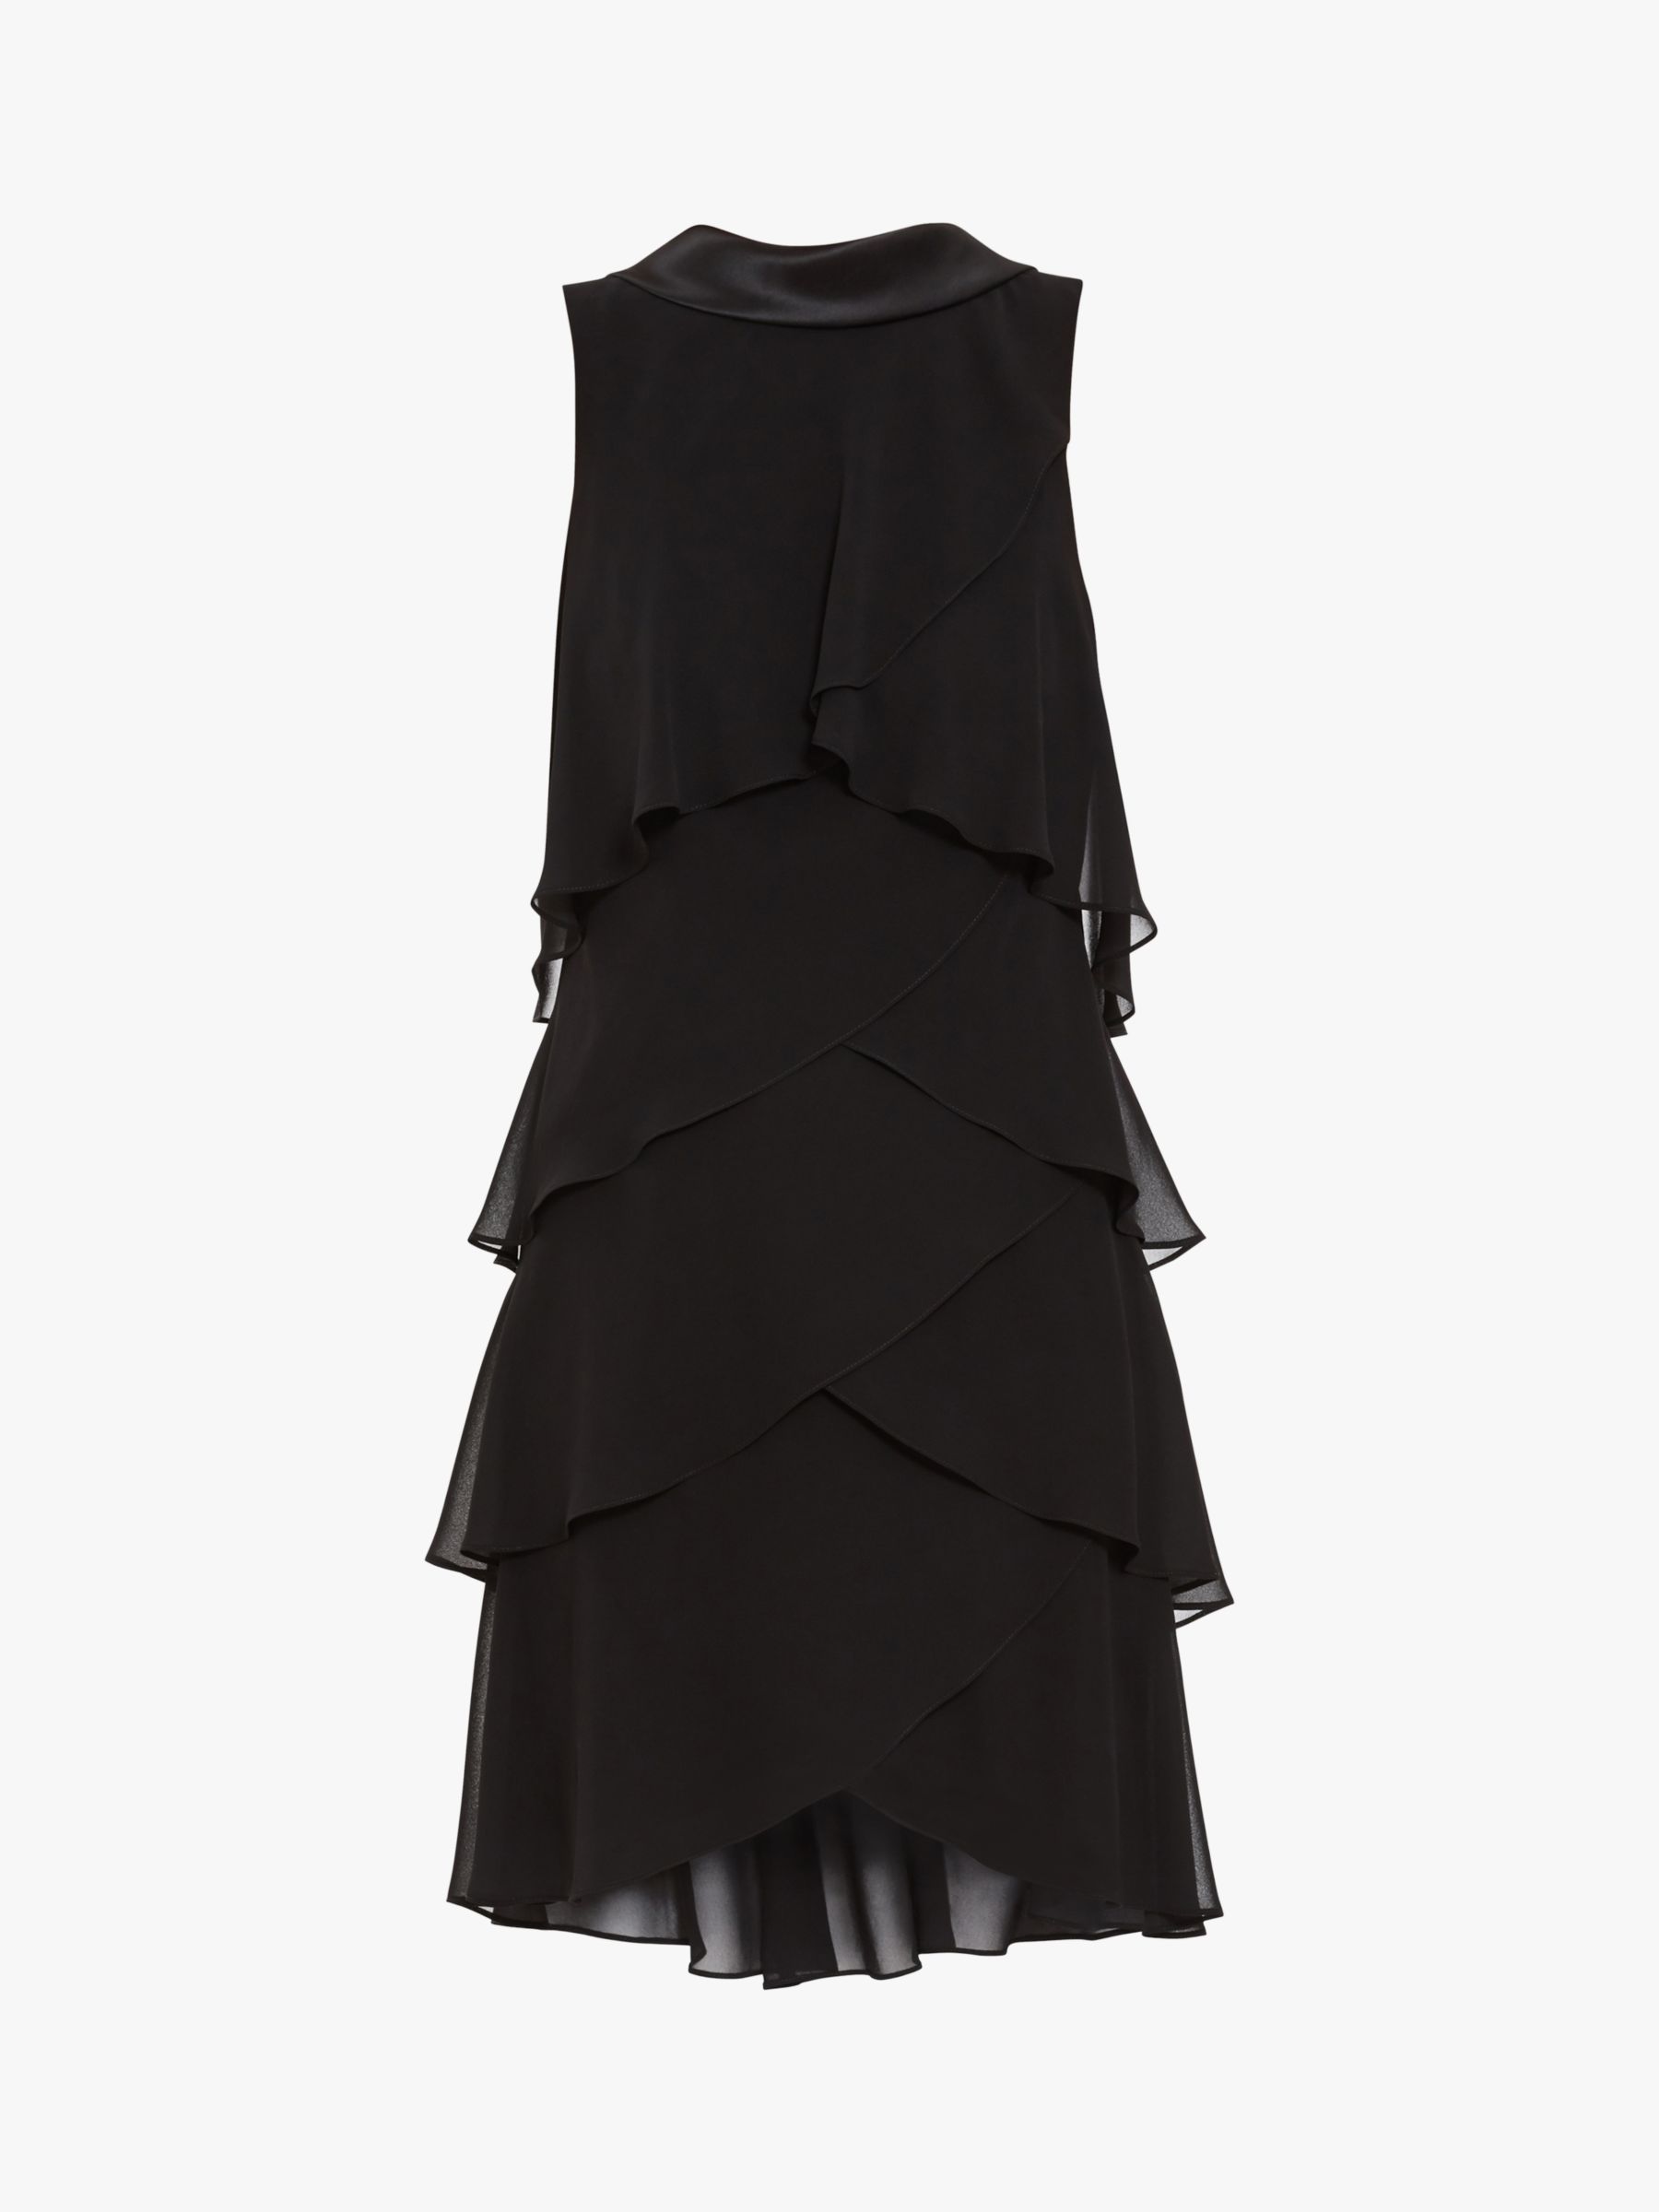 Gina Bacconi Halona Tiered Chiffon Dress, Black at John Lewis & Partners